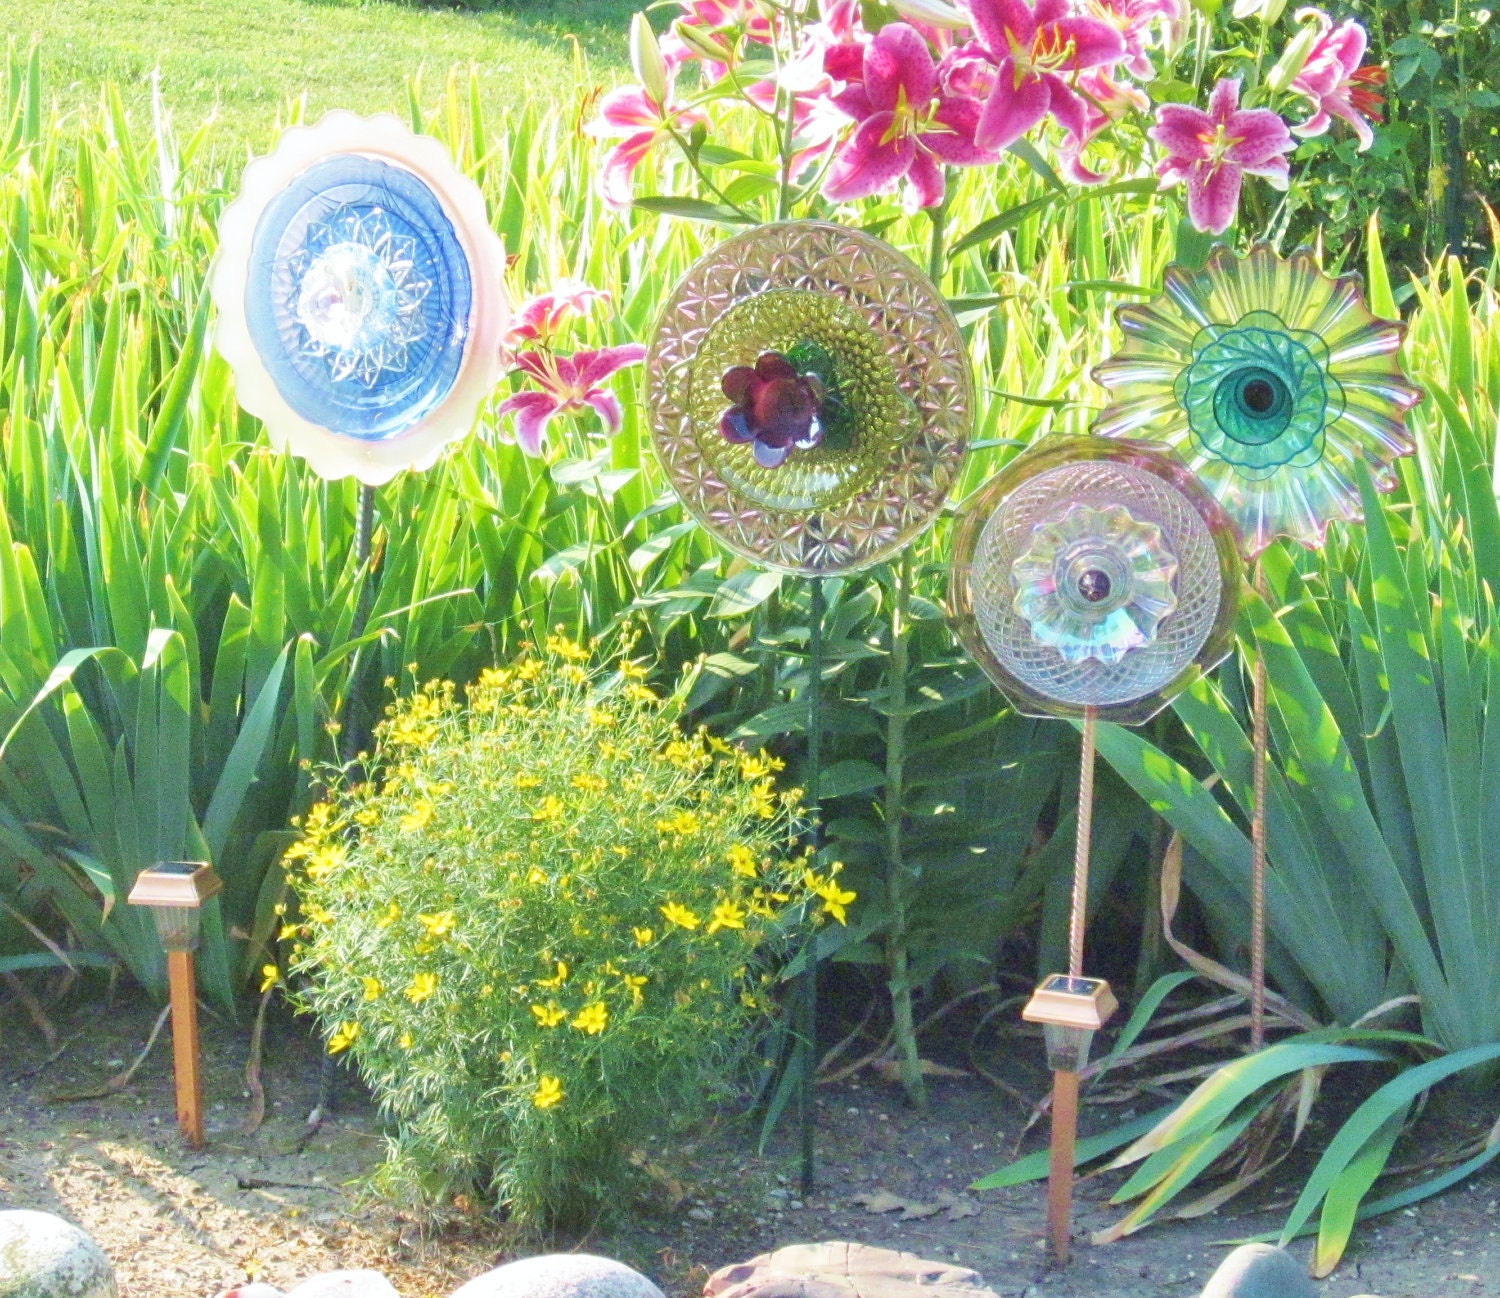 SALE Recycled Glass Garden Yard Art Outdoor Decor by jarmfarm